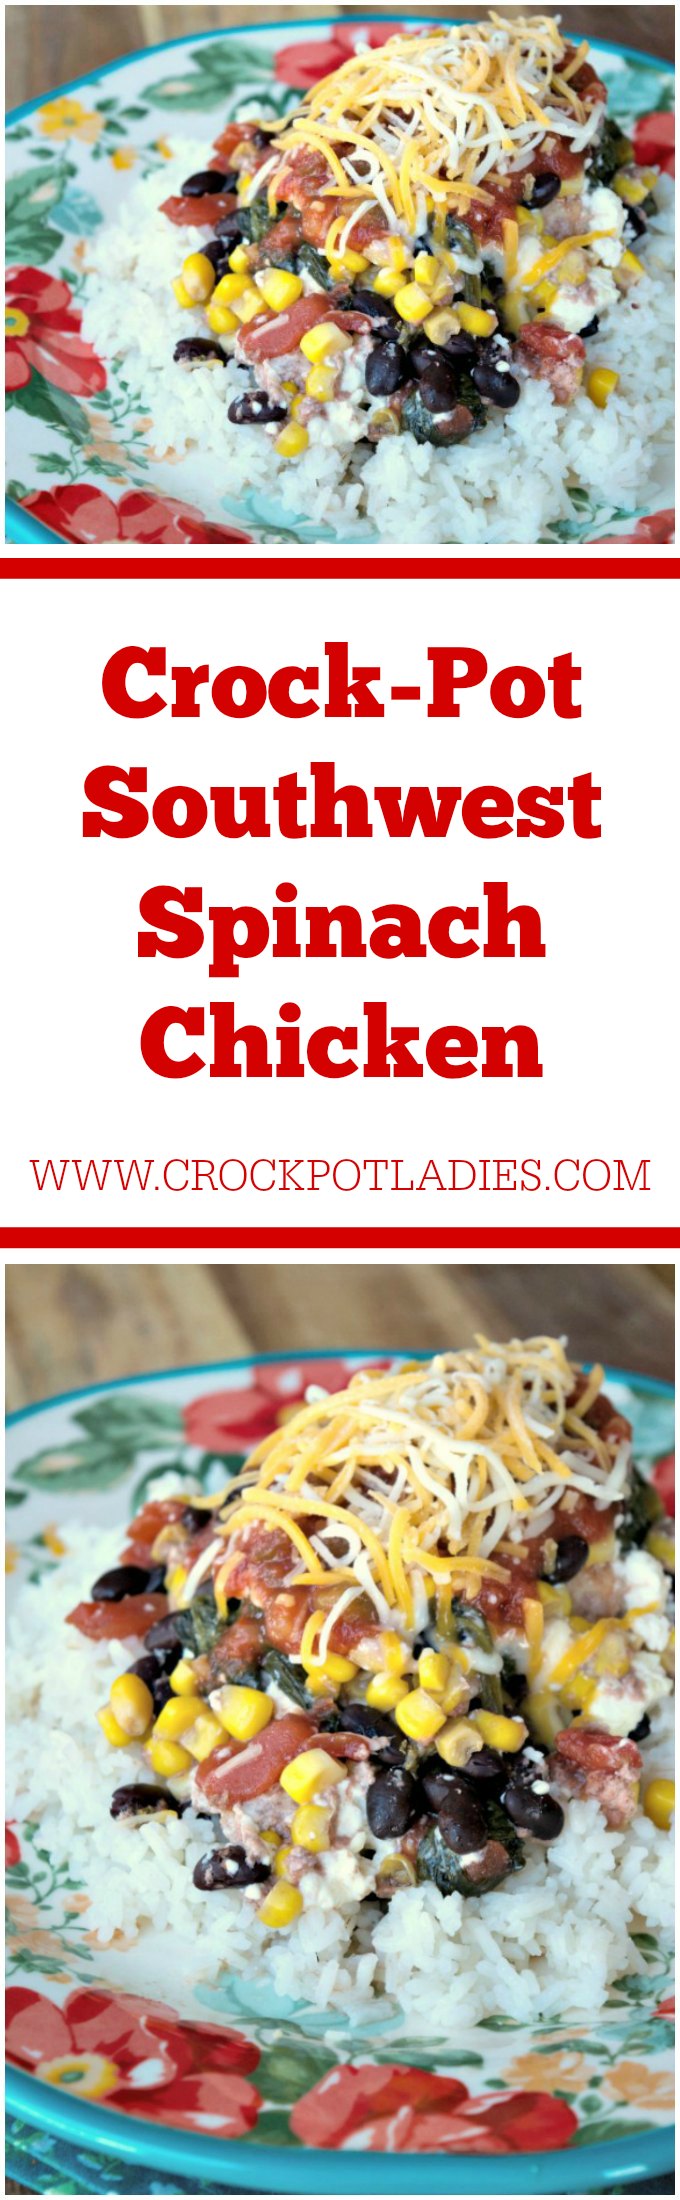 Crock-Pot Southwest Spinach Chicken